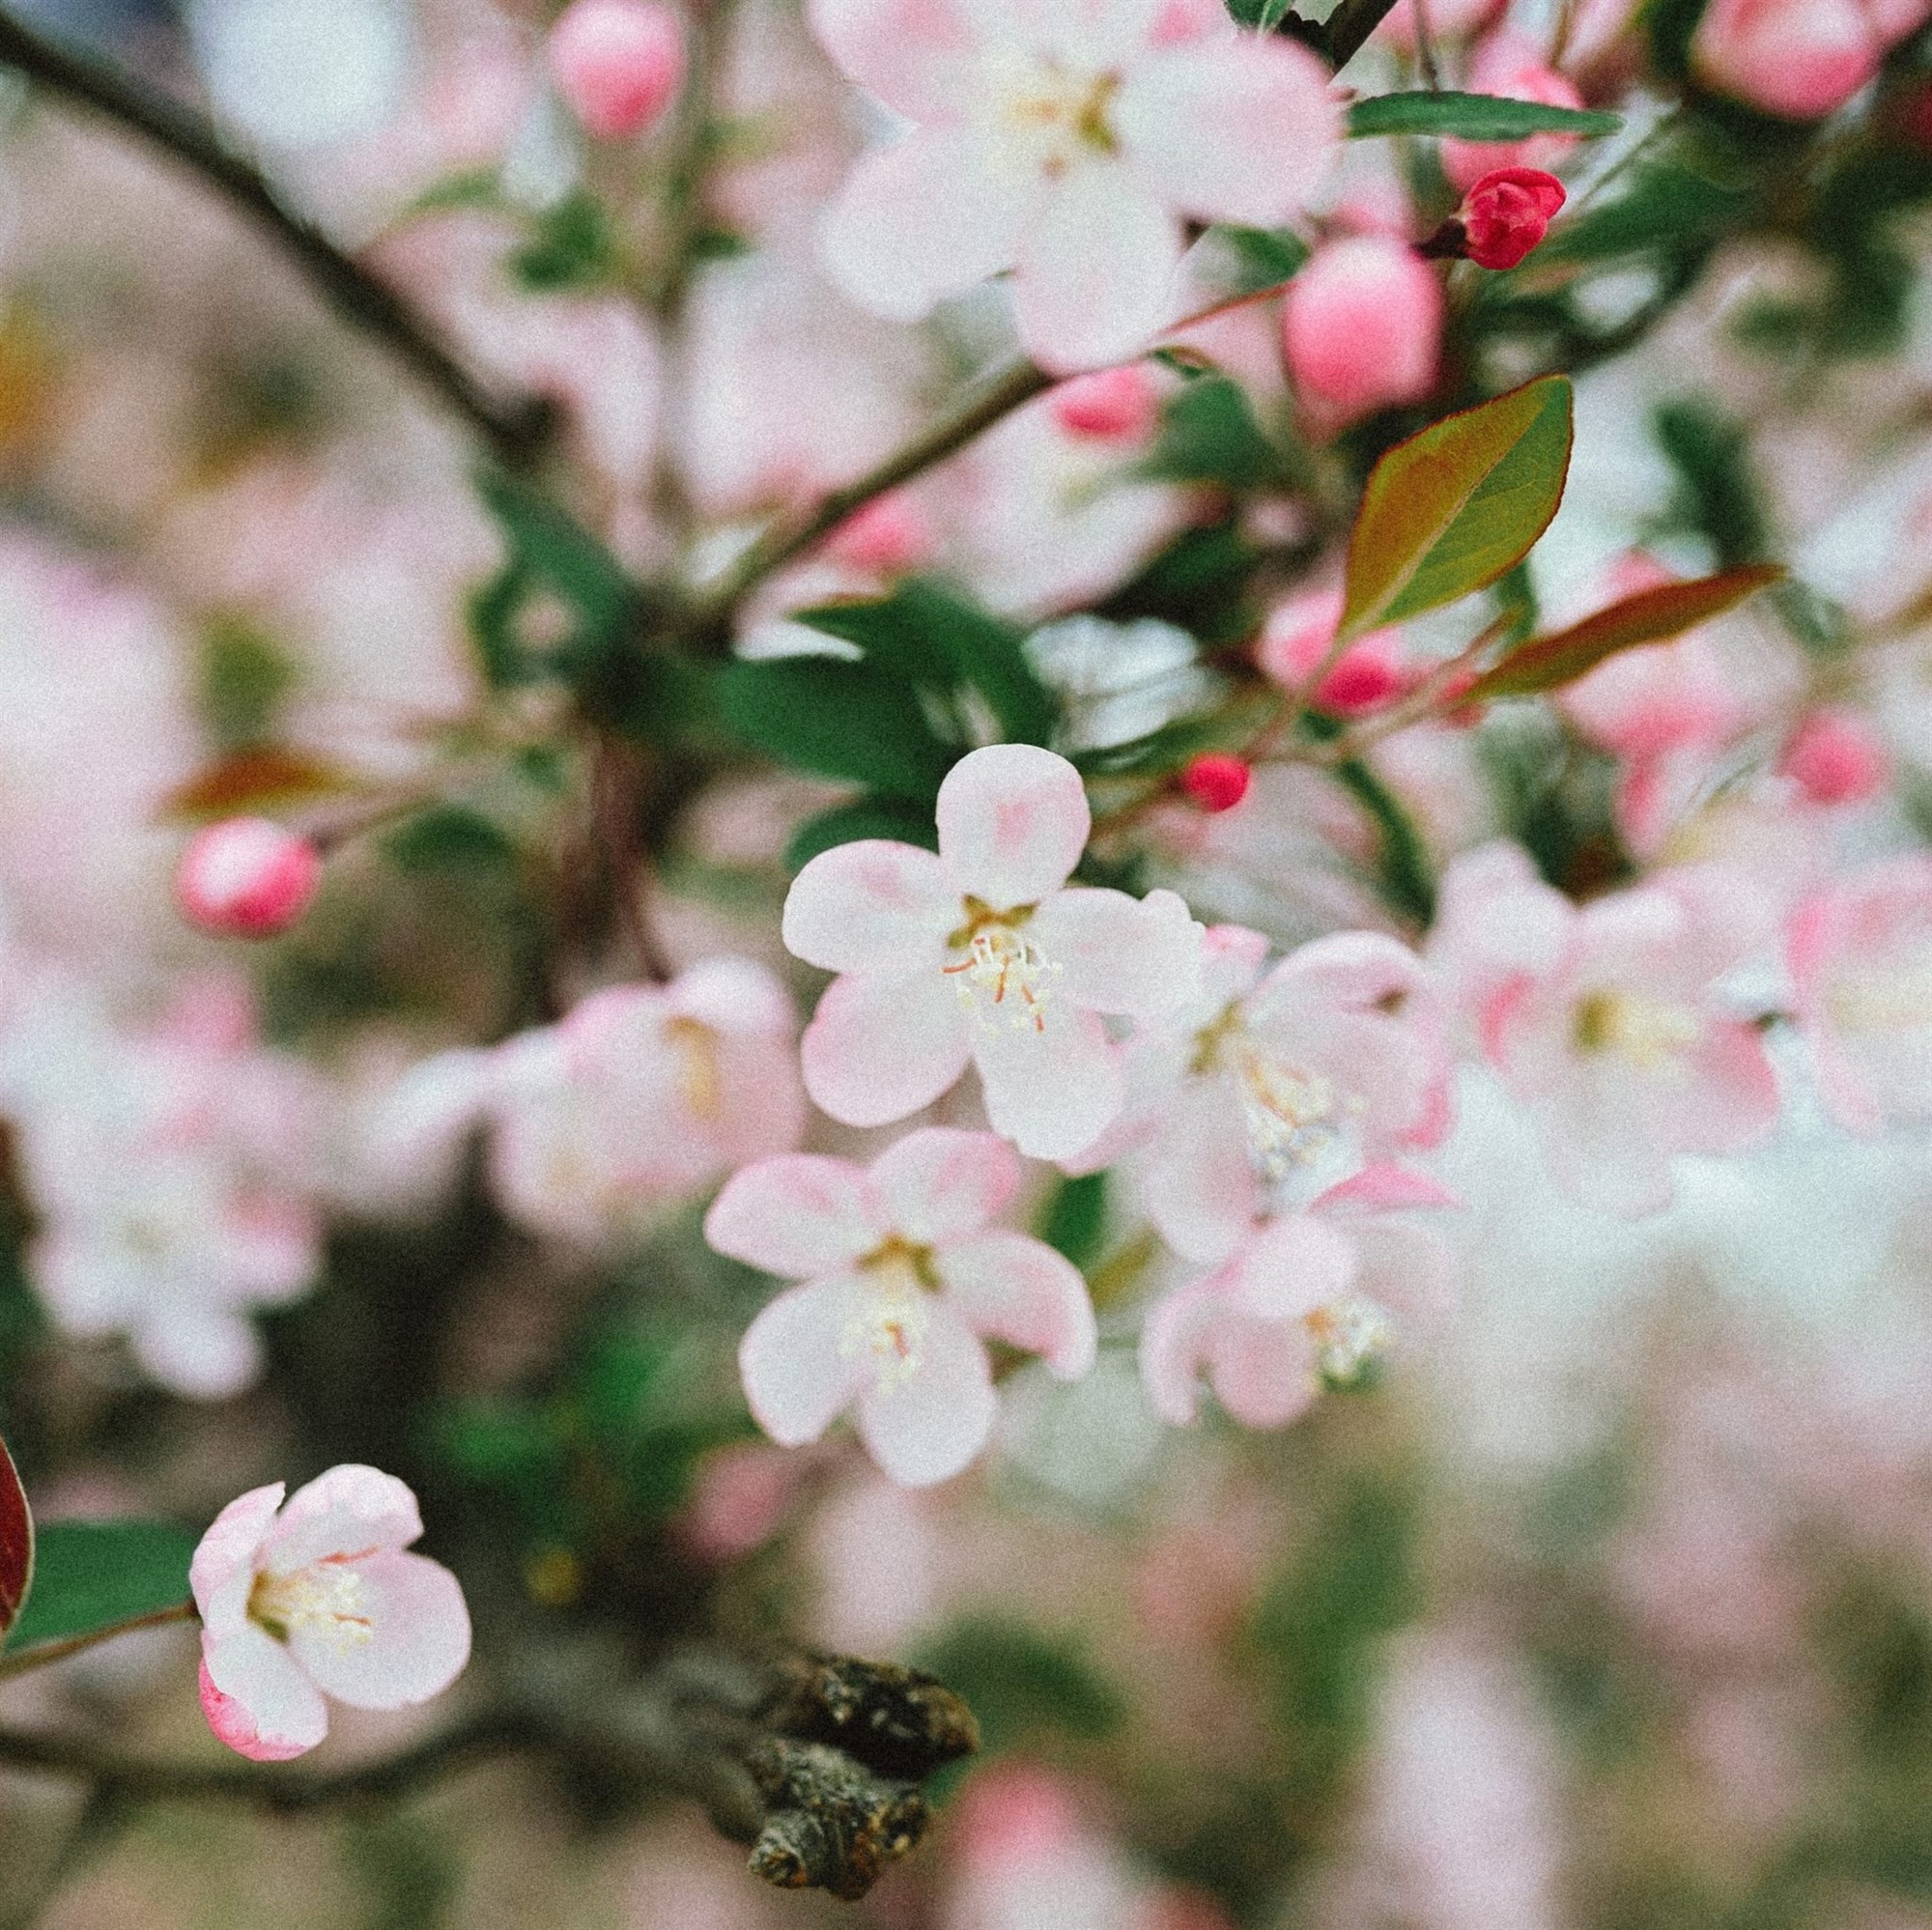 essex county cherry blossom festival 2022